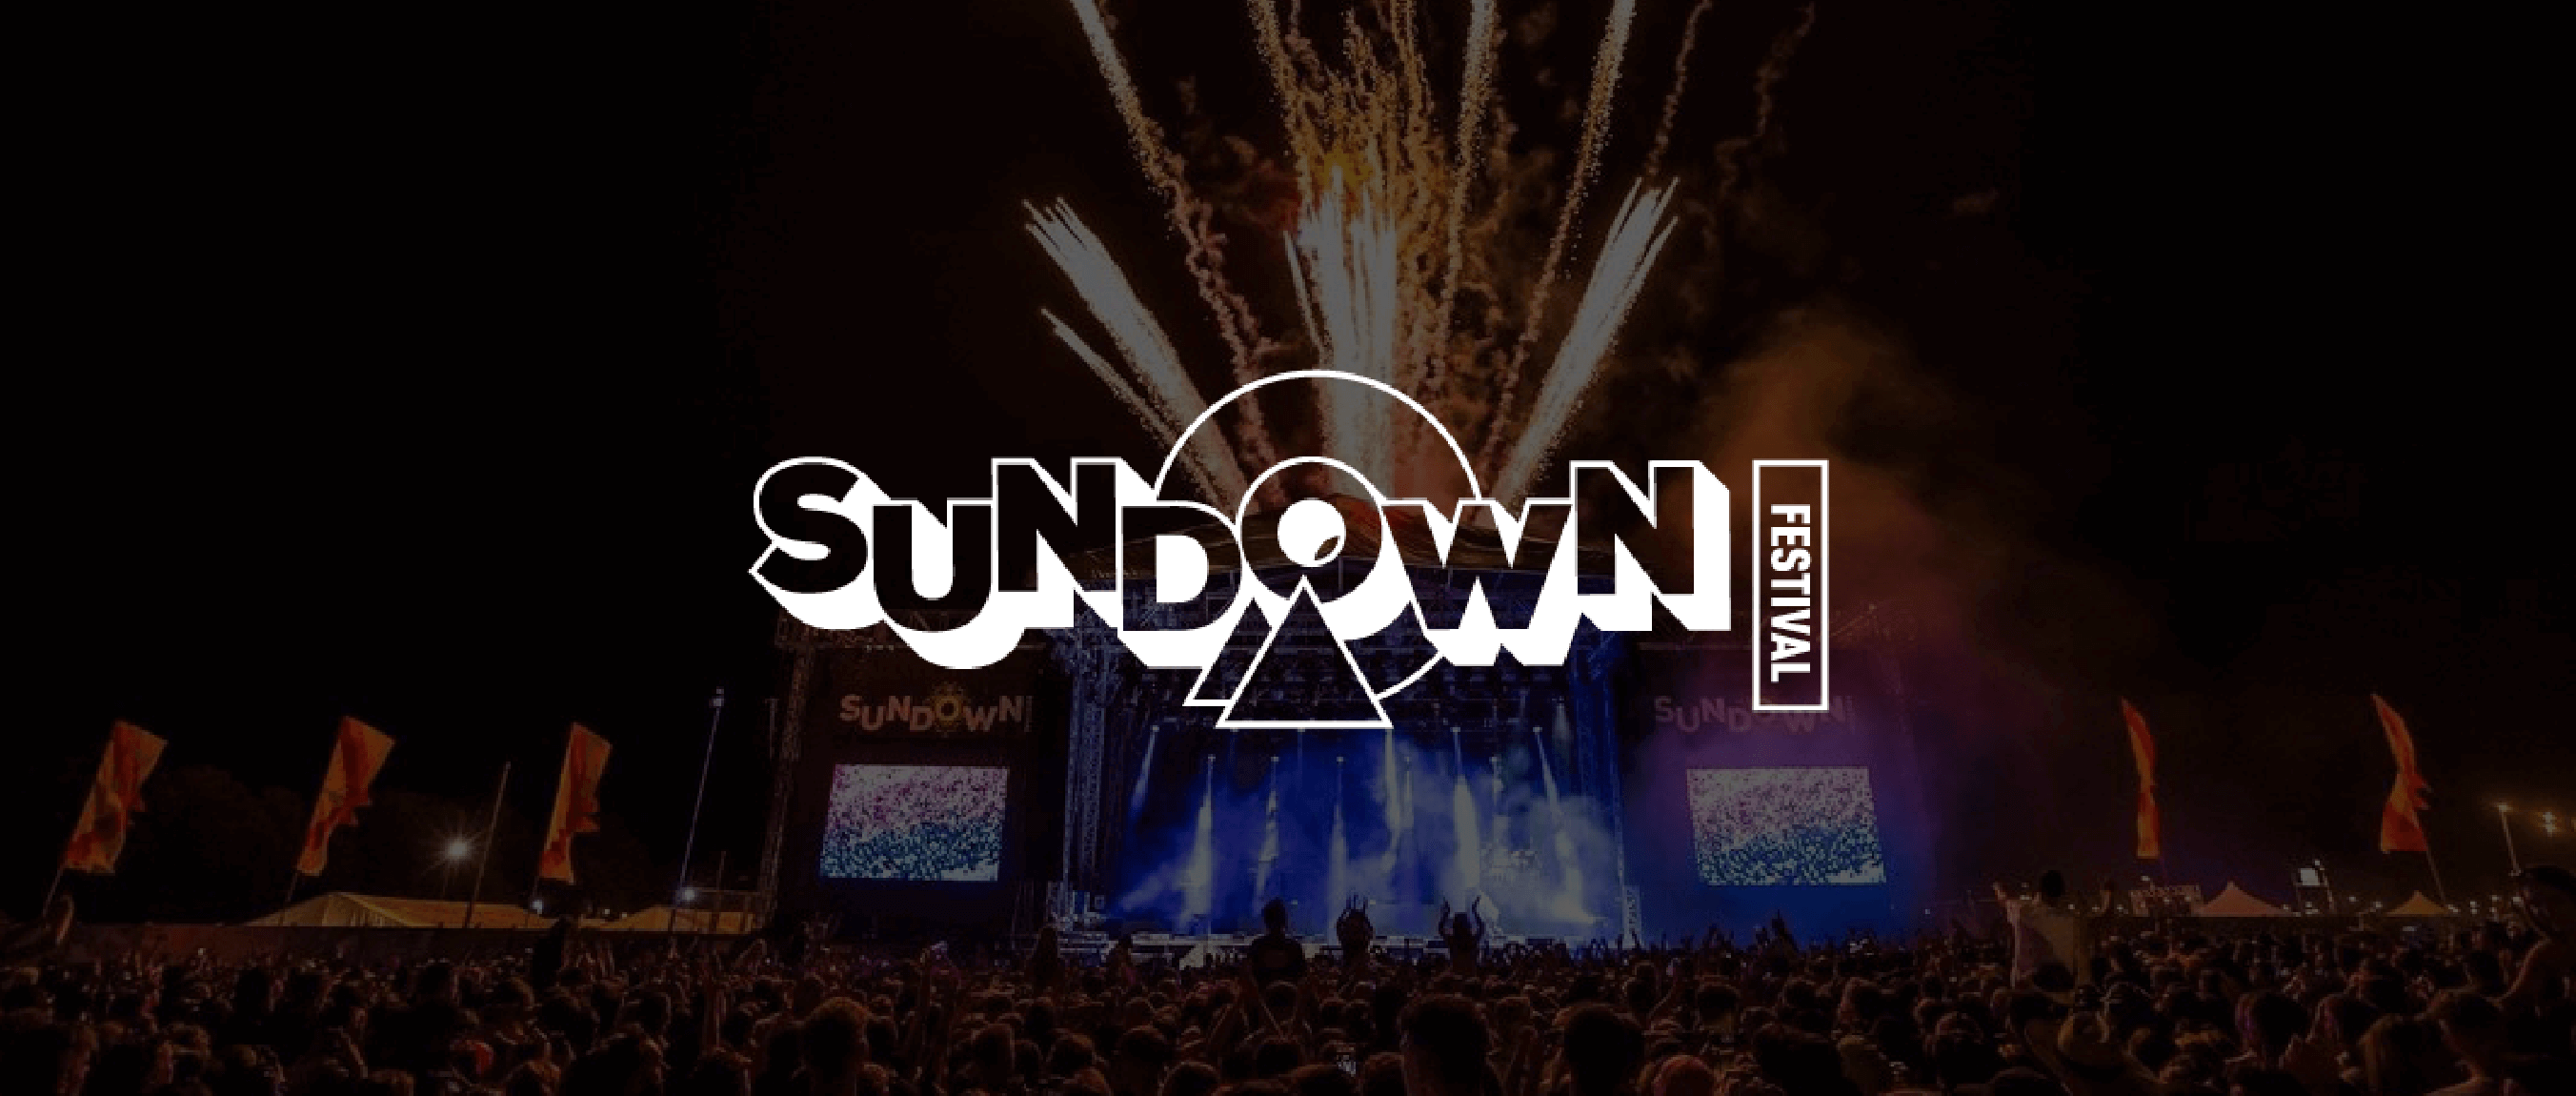 sundown-banner